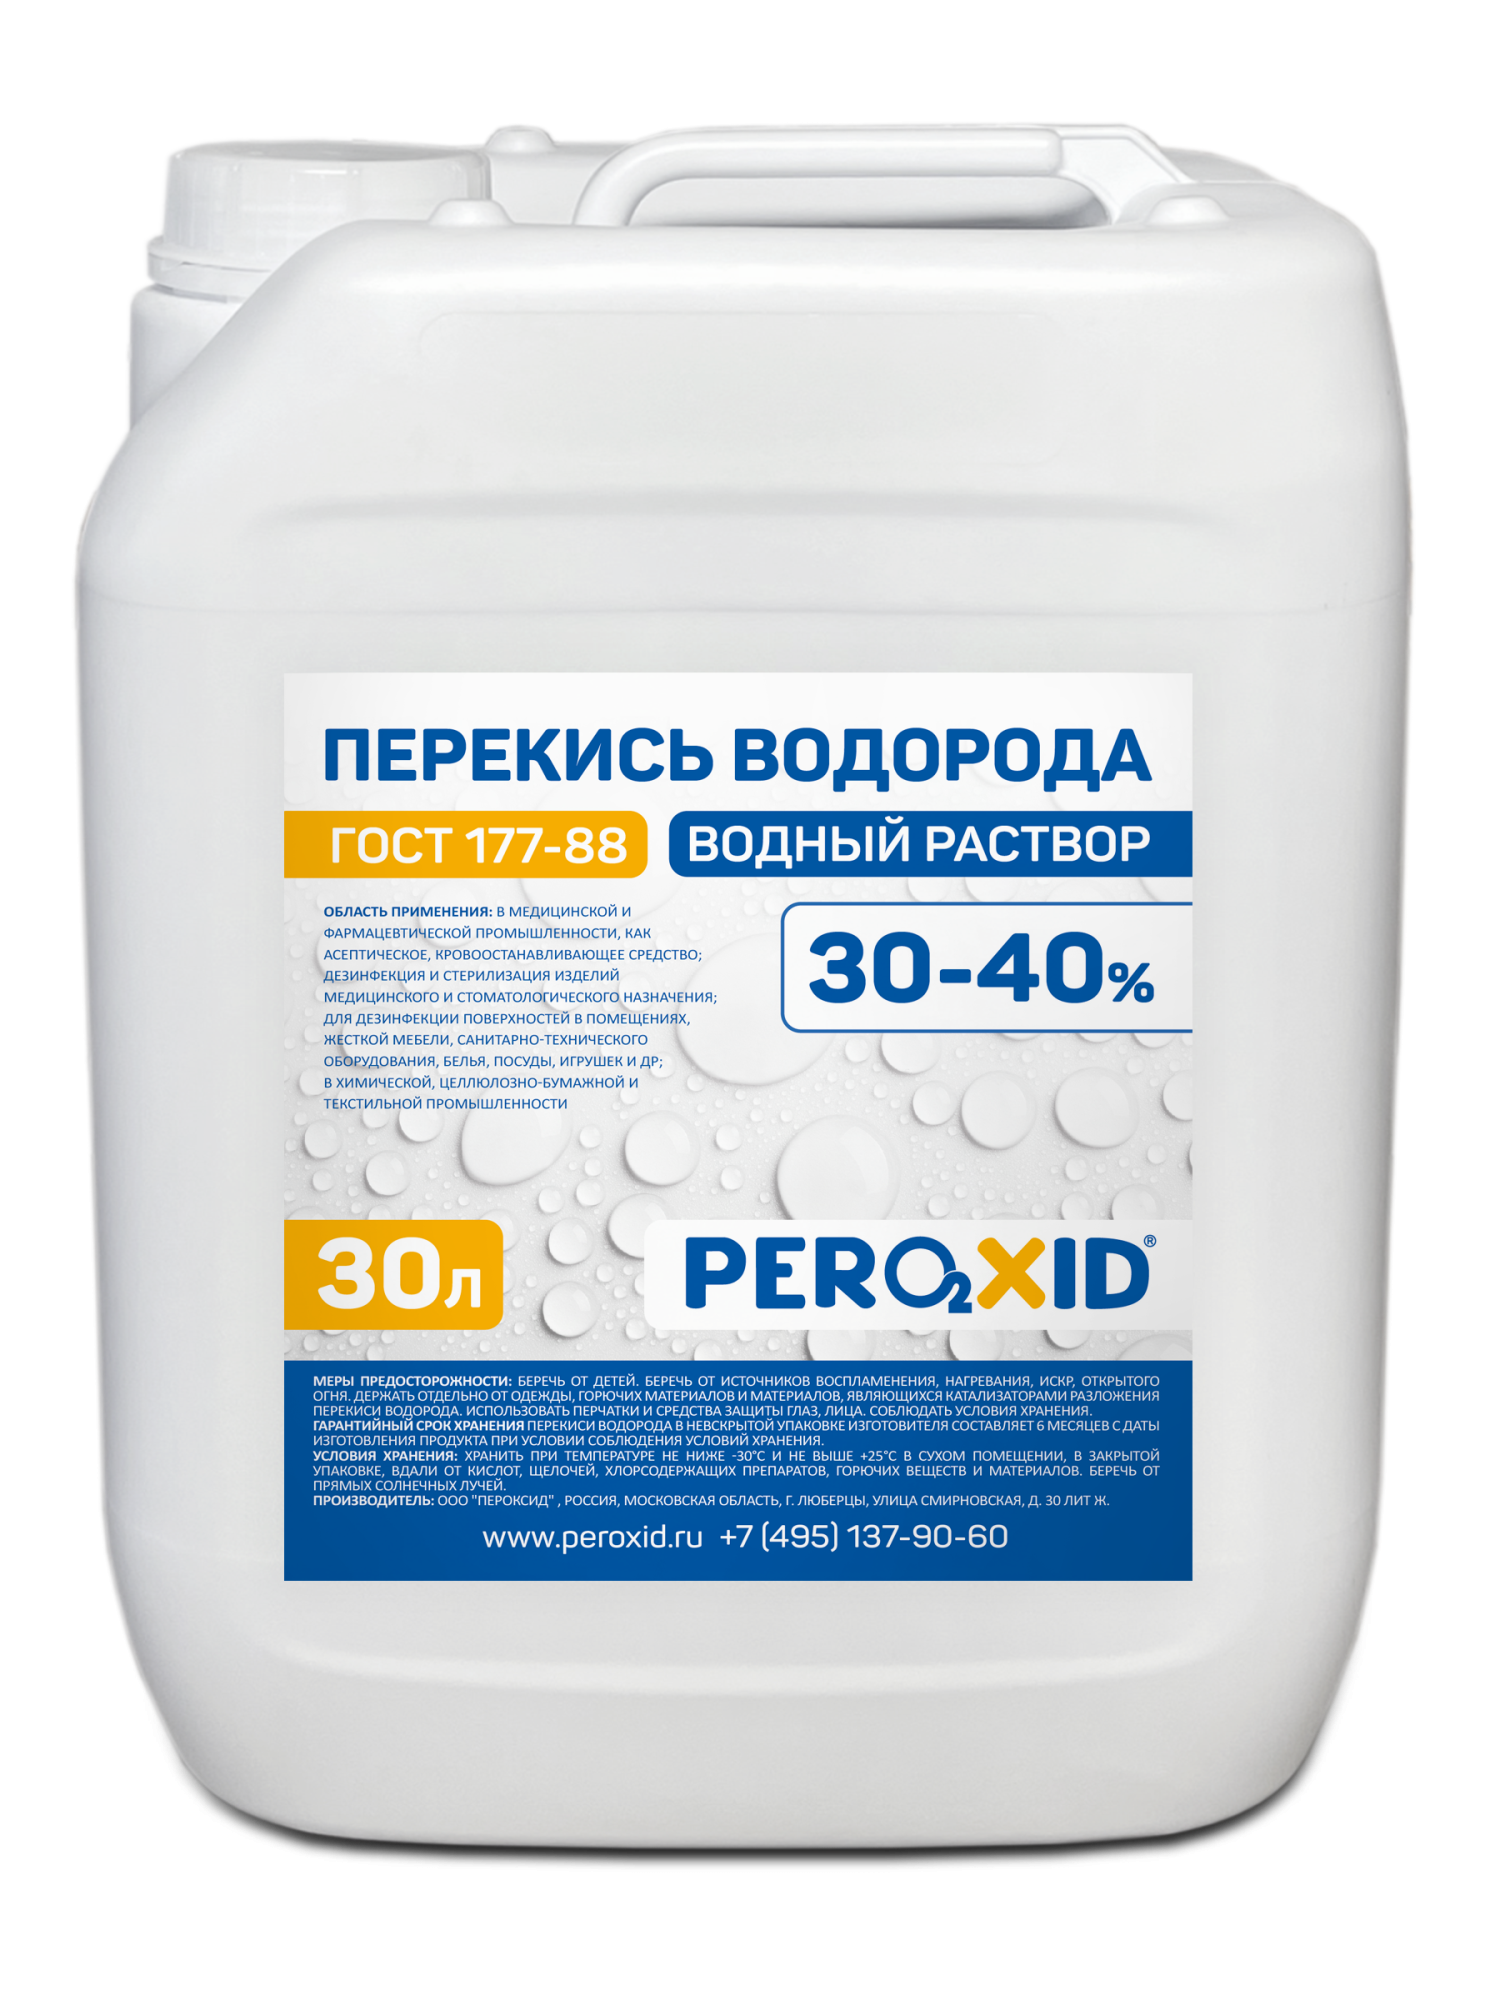 Перекись водорода водный раствор PEROXID 30-40% марка  ГОСТ 177-88  30 л/34 кг